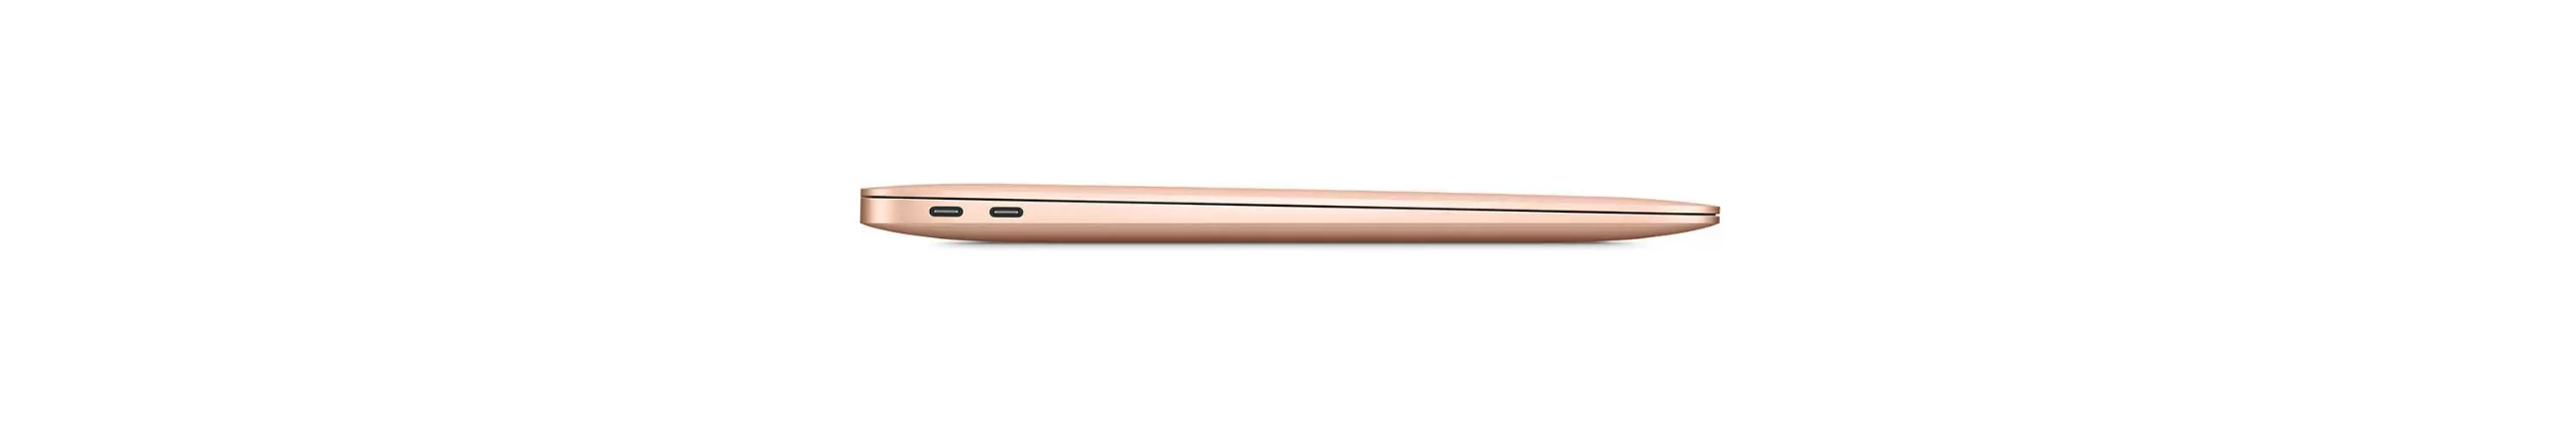 MacBook Air 13 (M1 2020) 8GB  256GB SSD Gold, Цвет: Gold / Золотой, Жесткий диск SSD: 256 Гб, Оперативная память: 8 Гб, изображение 5